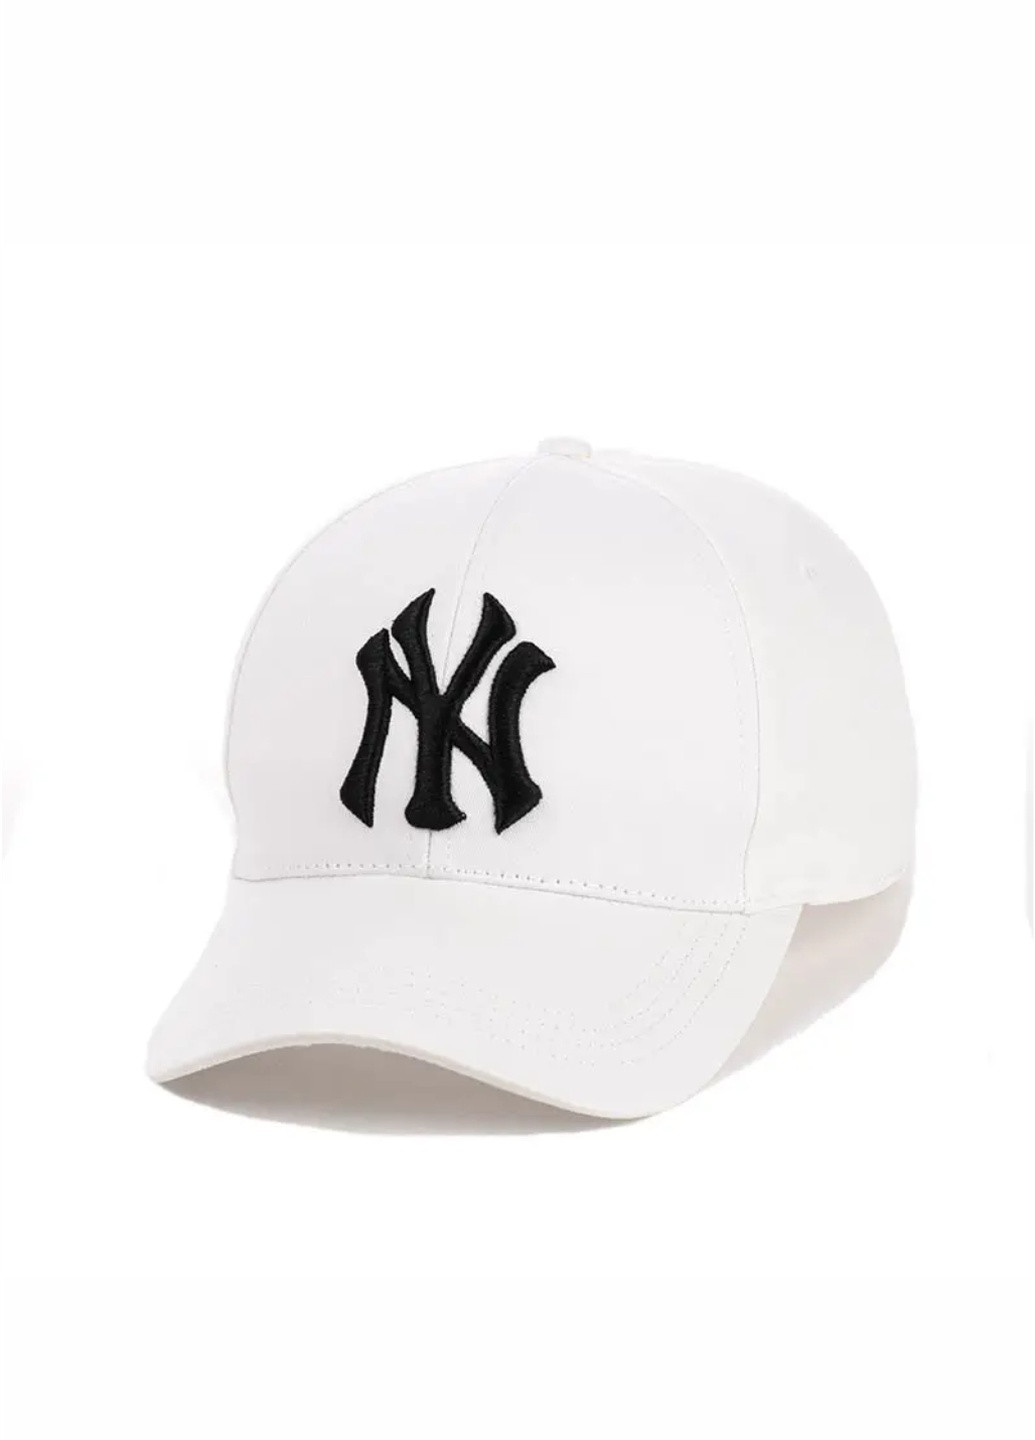 Кепка бейсболка з вишивкою New York (Нью Йорк) S/M Білий New Fashion бейсболка (257642439)